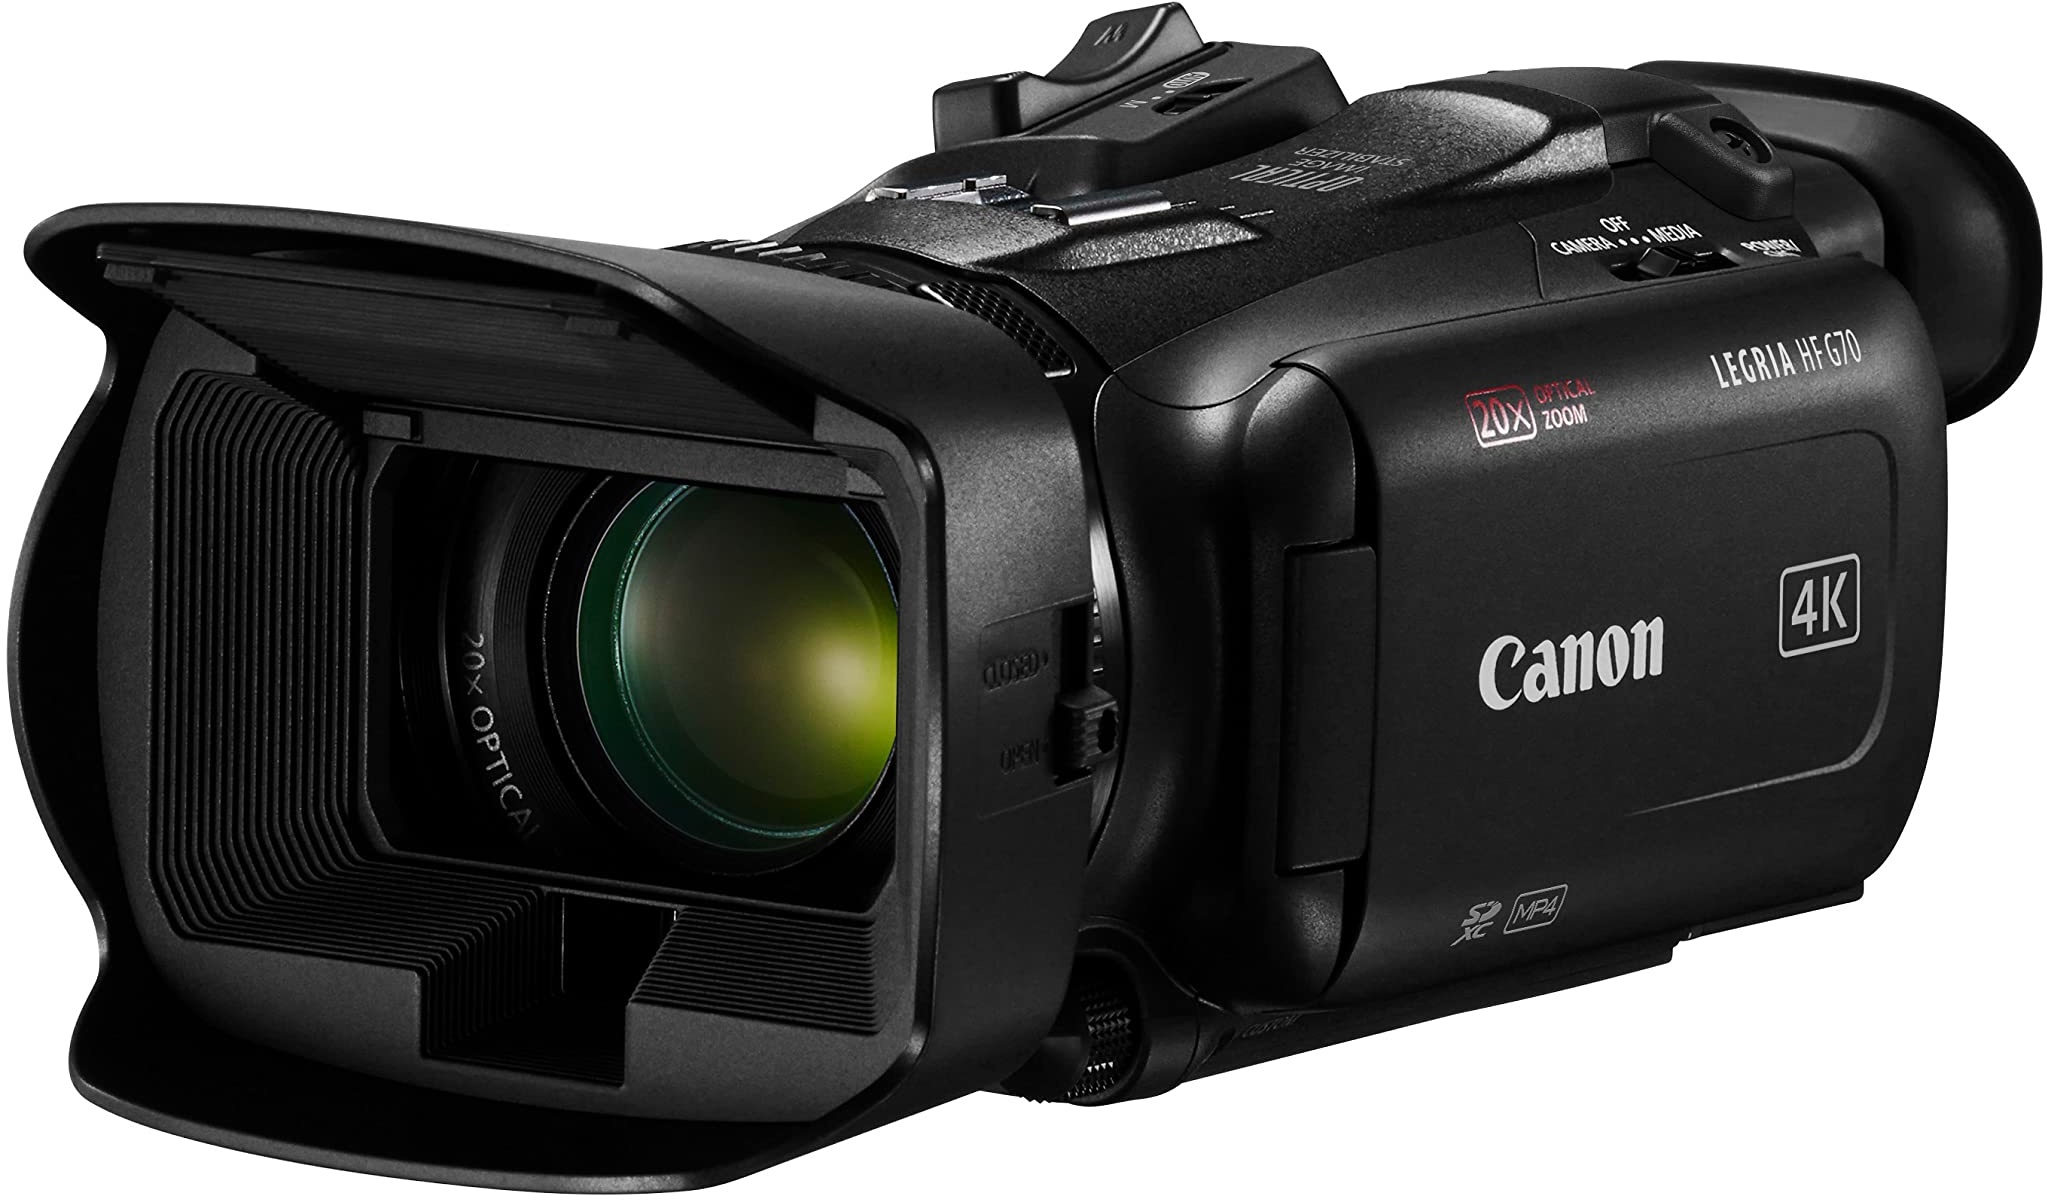 Canon LEGRIA HF G70 Camcorder 4K Full HD (UHD Videokamera 20fach Zoom, 3,5-Zoll LC-Display, Autofokus, Zeitlupe, Zeitraffer, 2 SD Kartenslots, MP4 Video Aufzeichnung, UVC HD Livestreaming) schwarz